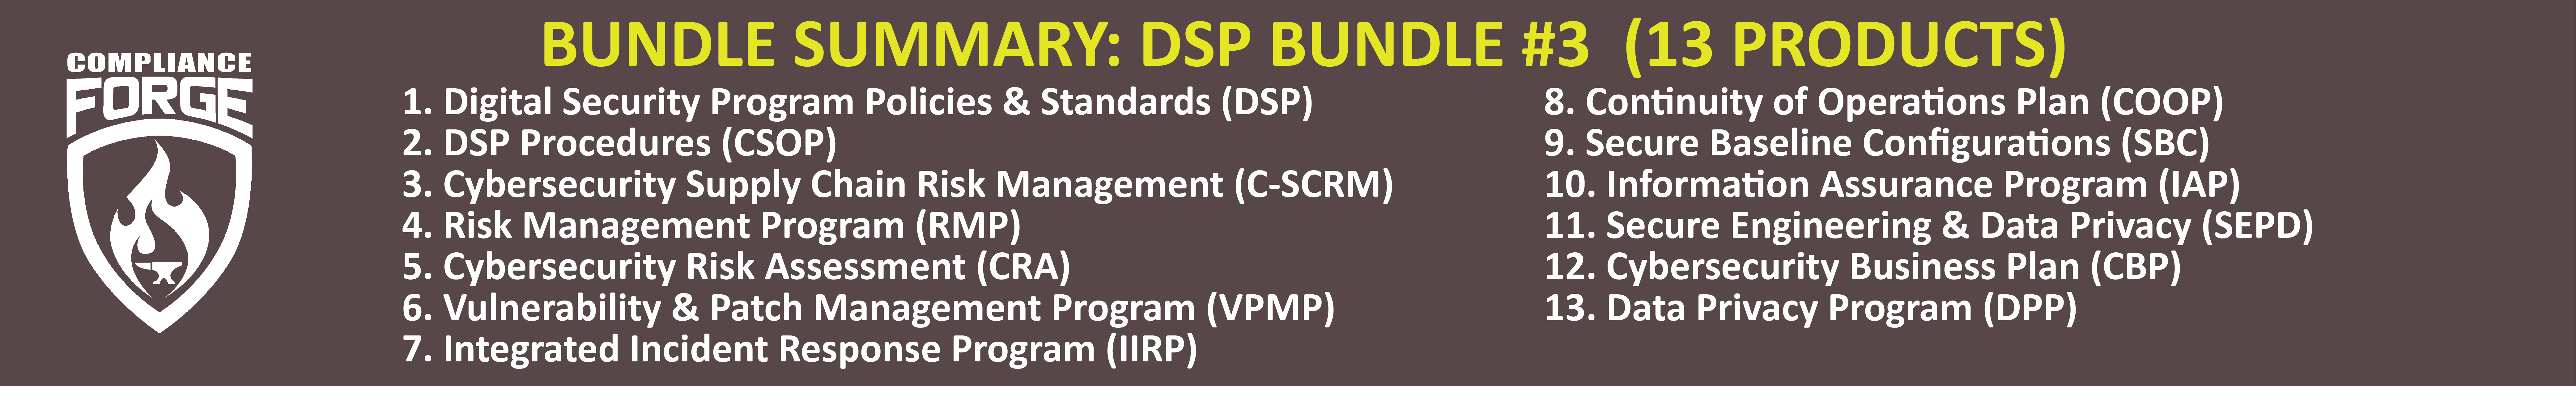 DSP bundle 3